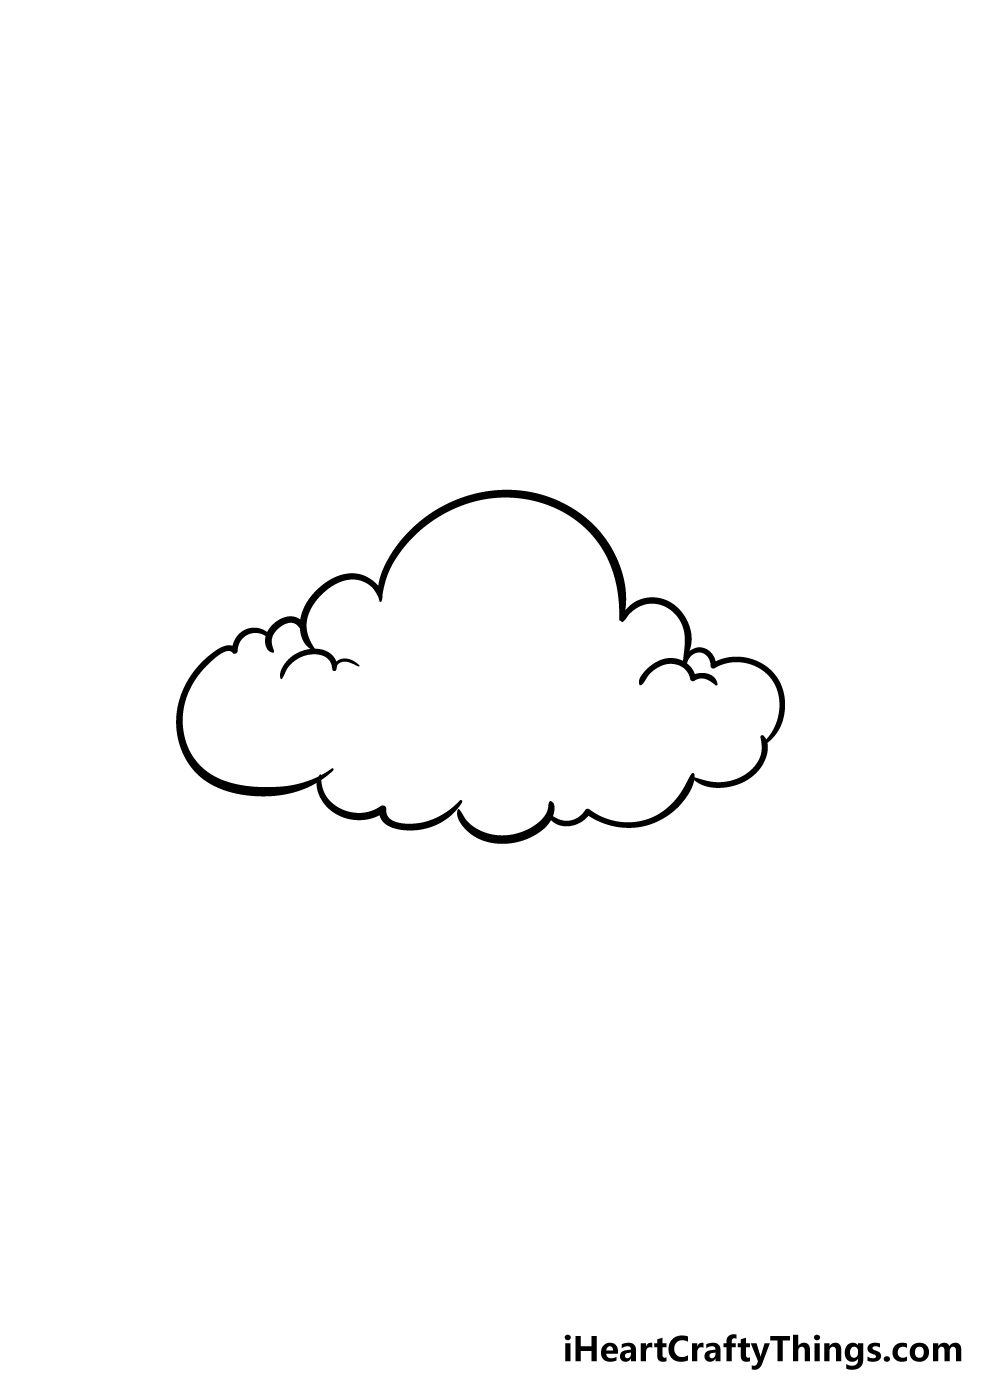 Cloud 5 1 - Hướng dẫn cách vẽ đám mây đơn giản với 6 bước cơ bản